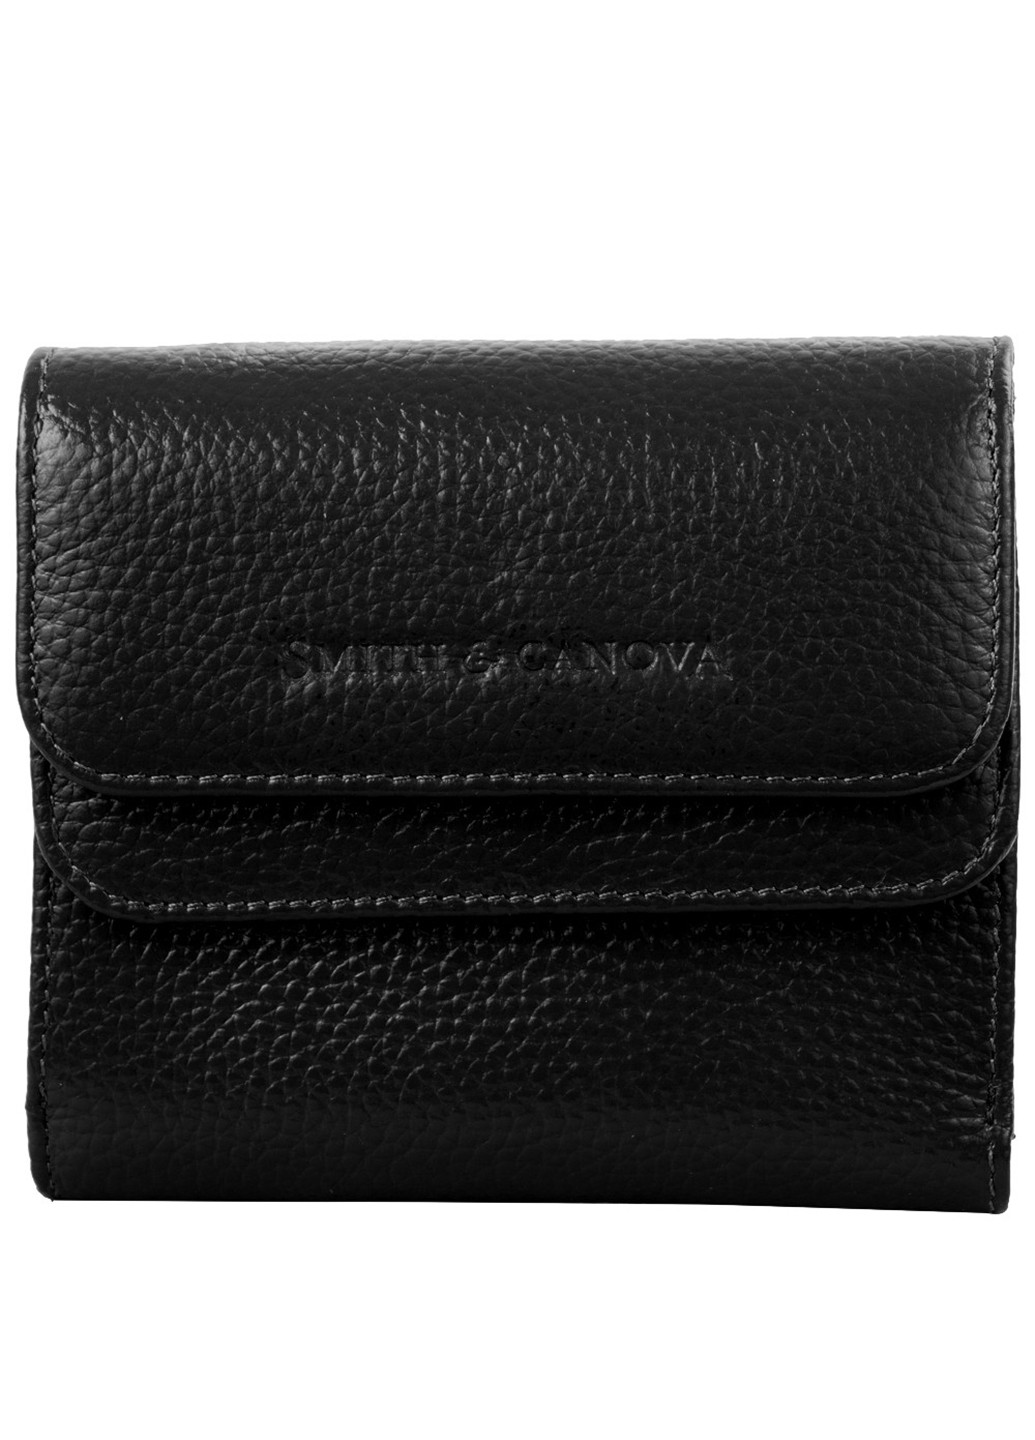 Жіночий шкіряний гаманець 11х9,5х2,5 см Smith&Canova (252131592)